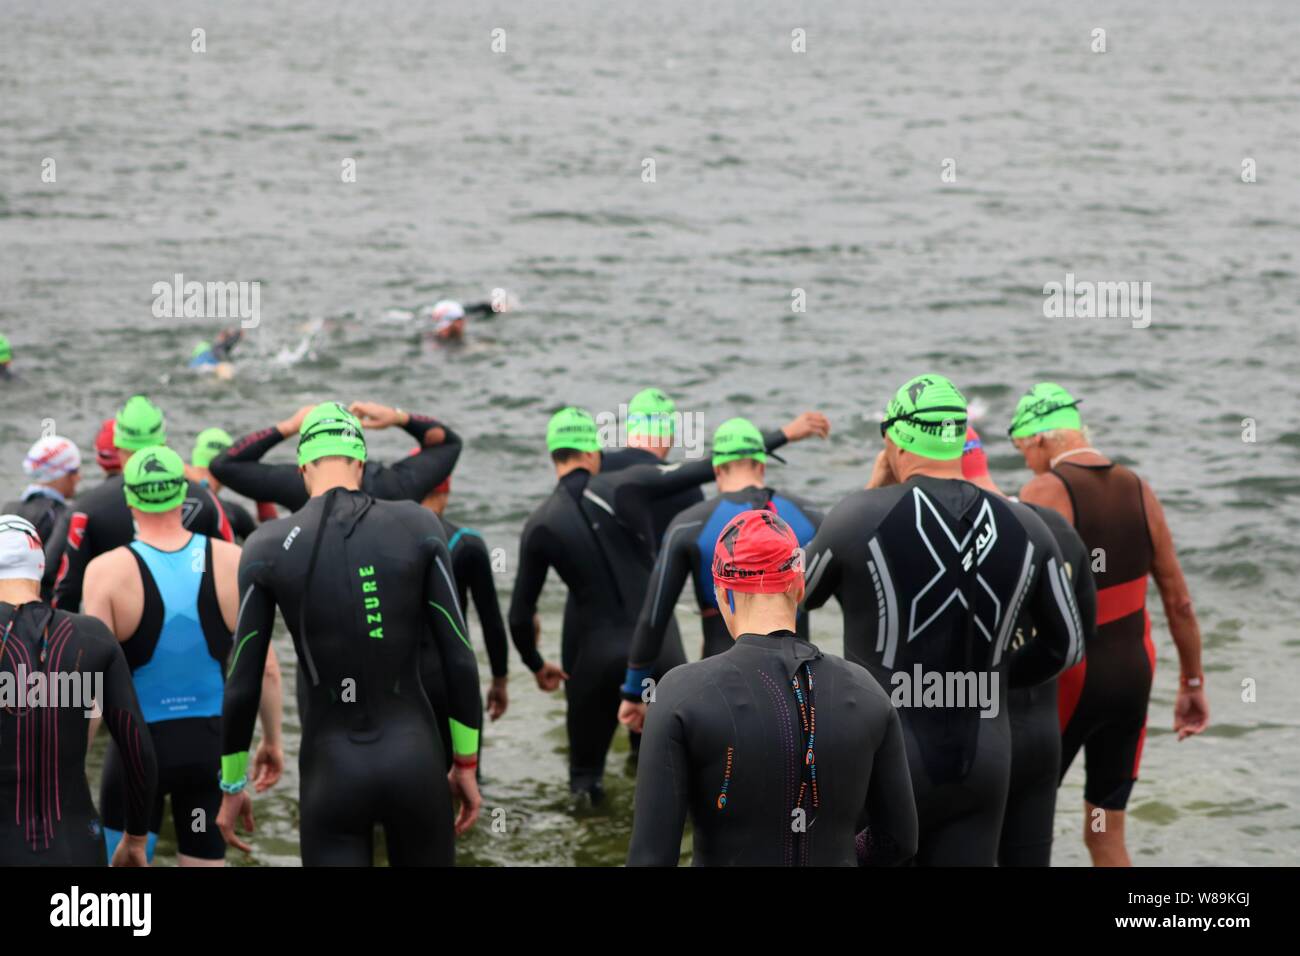 Las personas que toman parte en el sprint Farmoor Decathlon, comenzando con  el evento de natación Natación, vistiendo gorras y trajes de neopreno  Fotografía de stock - Alamy